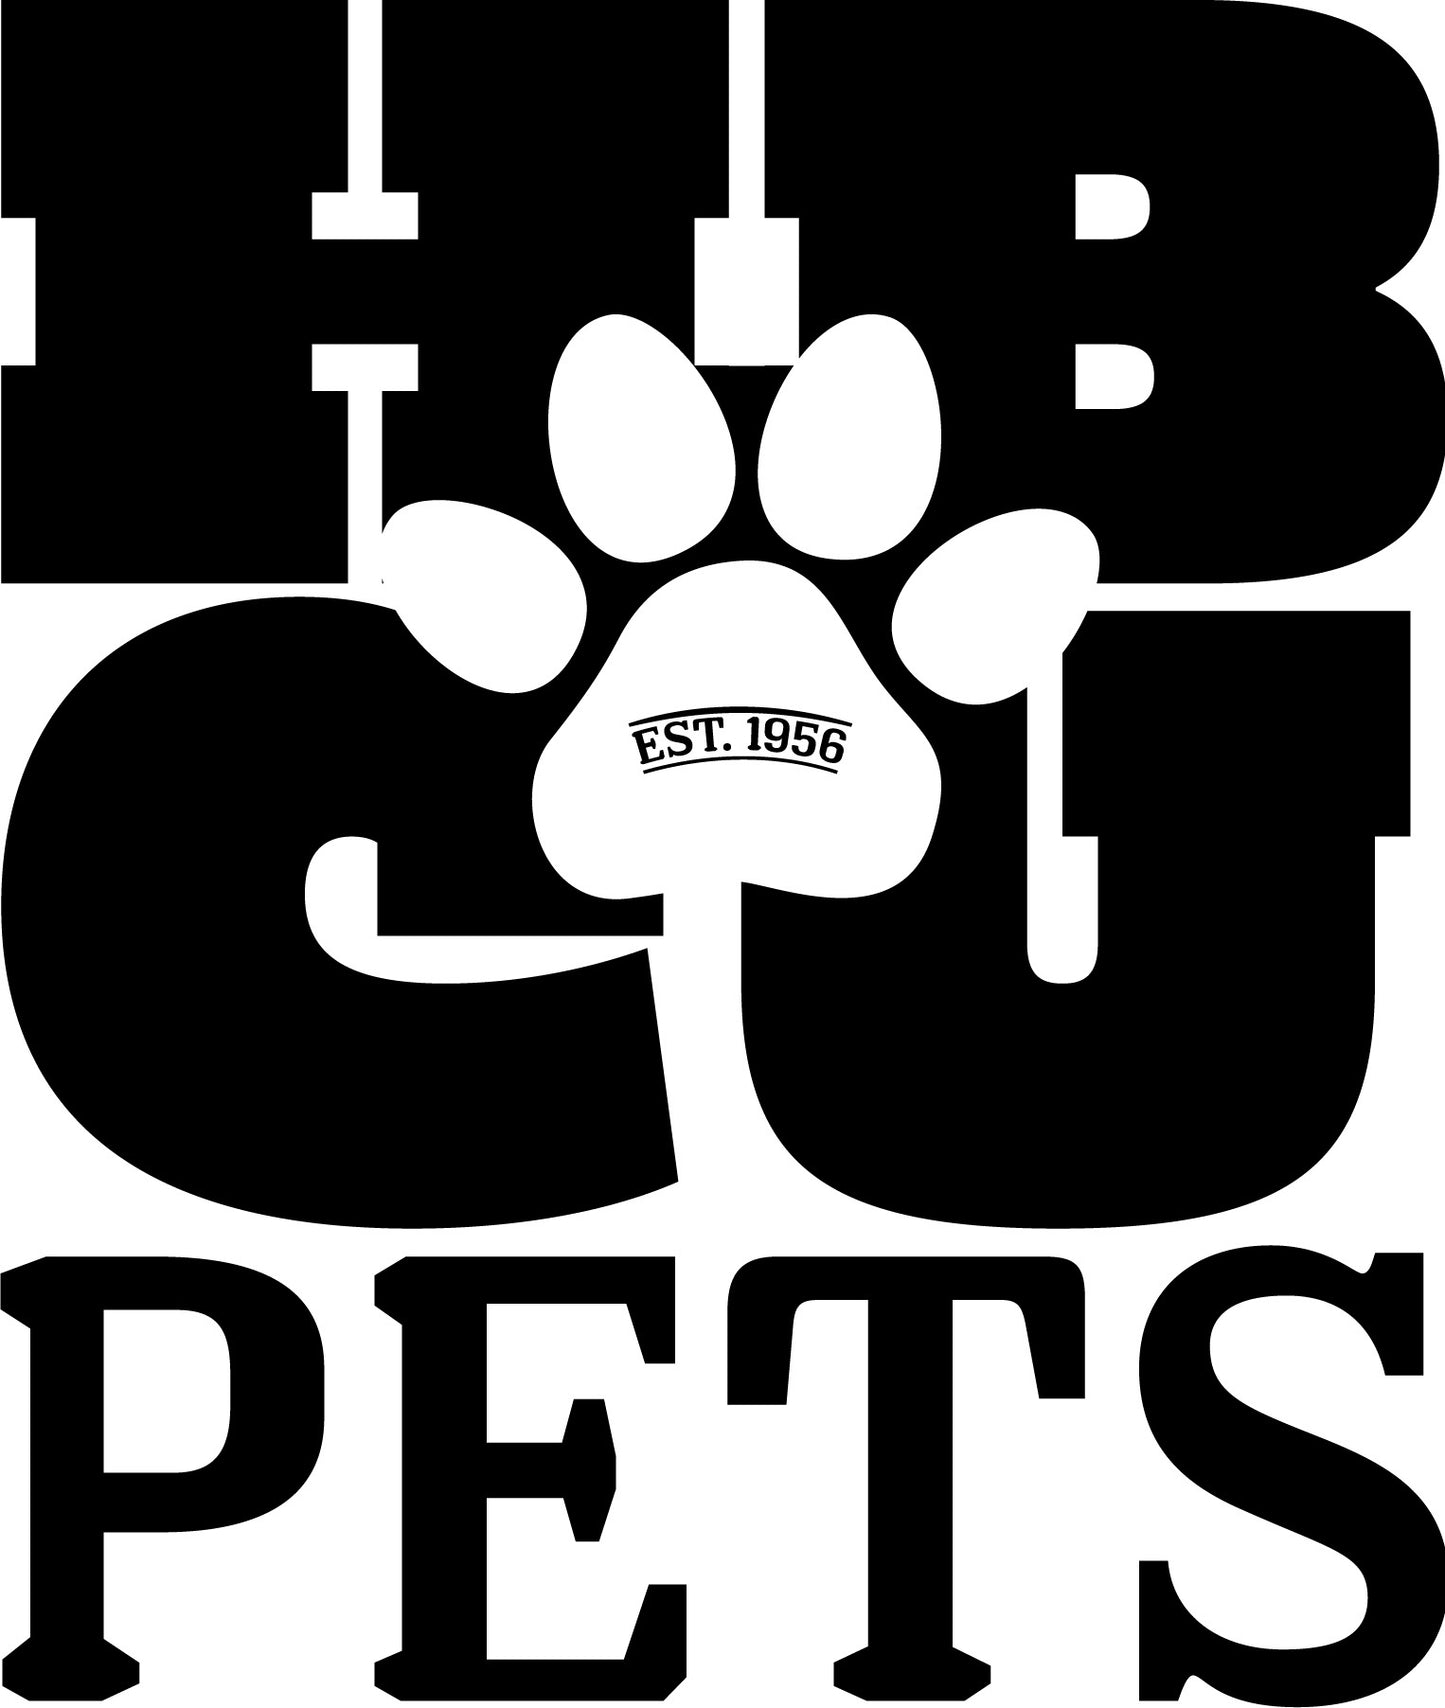 HBCU Pets Gift Card